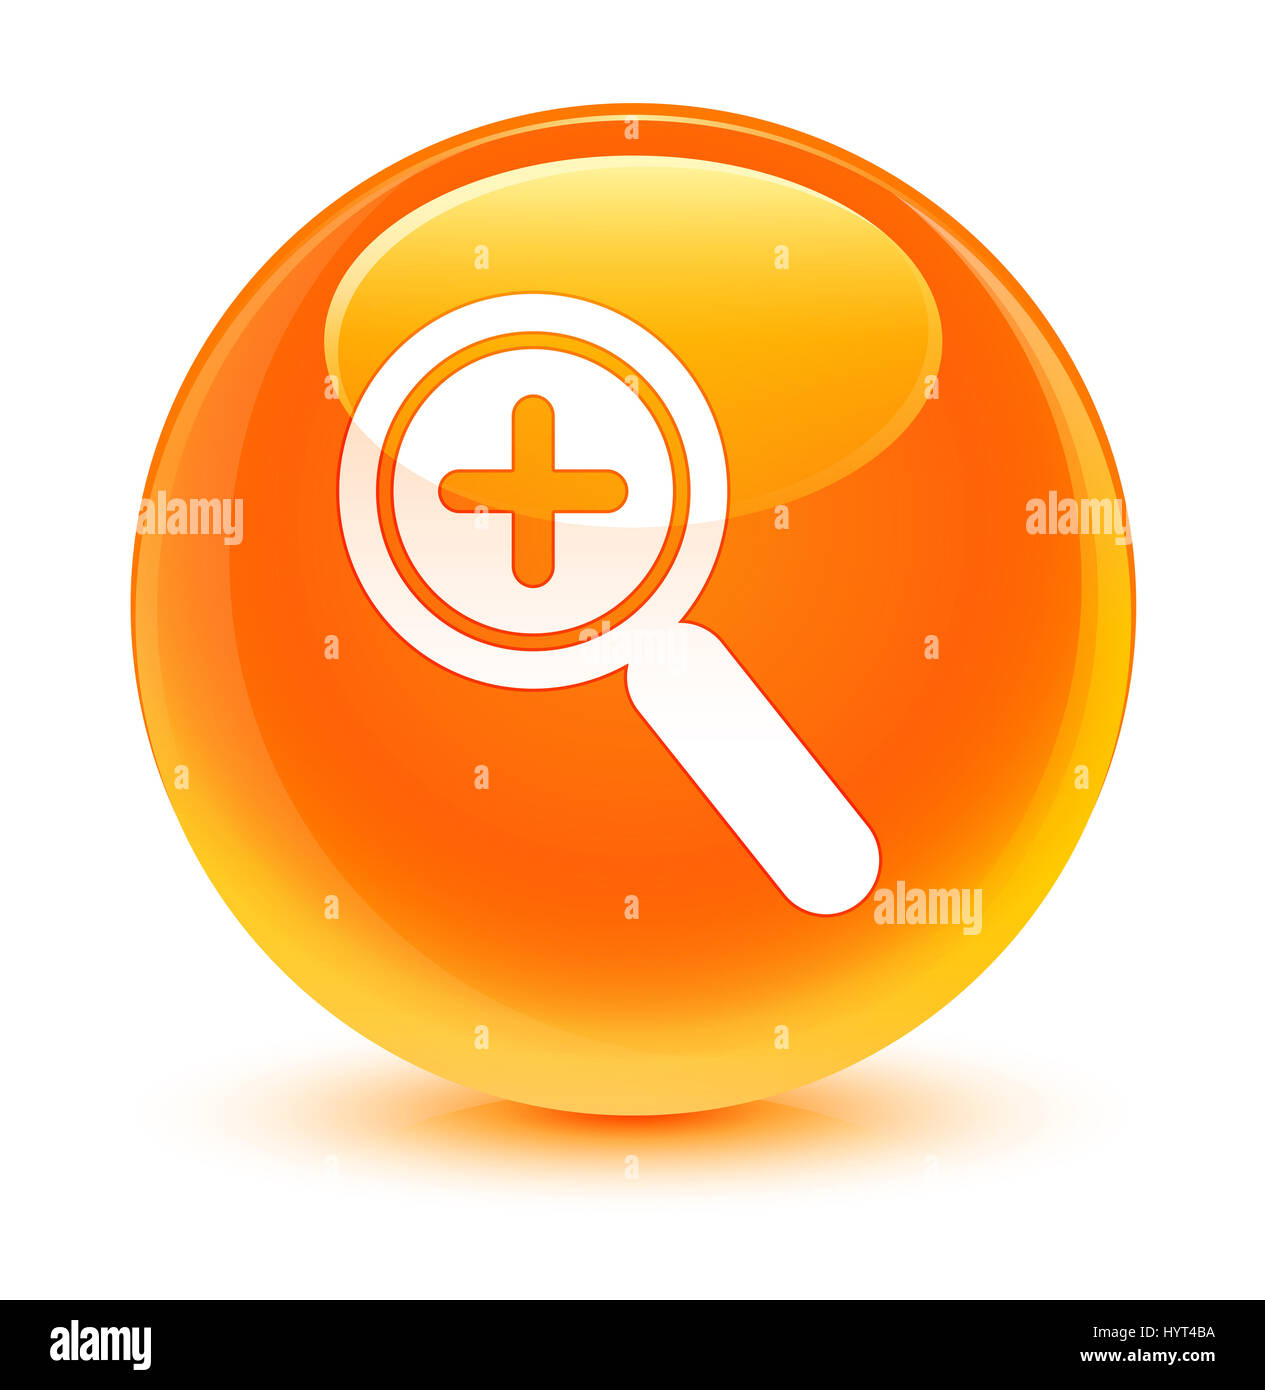 Dans l'icône Zoom isolé sur bouton rond orange vitreux abstract illustration Banque D'Images